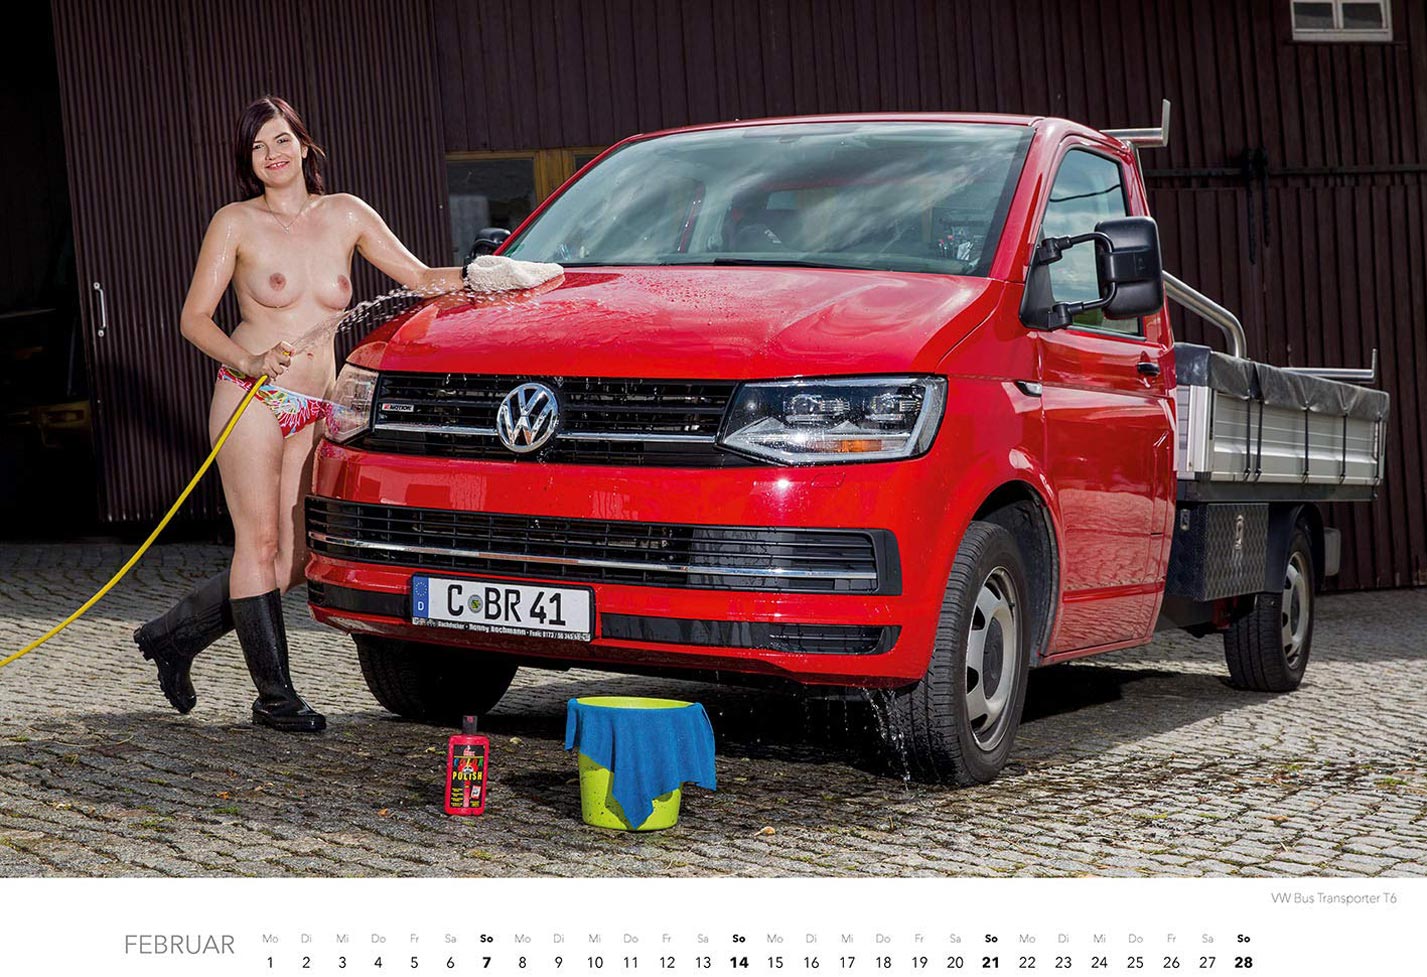 Эротический календарь с сексуальными полуголыми девушками, моющими машины / февраль